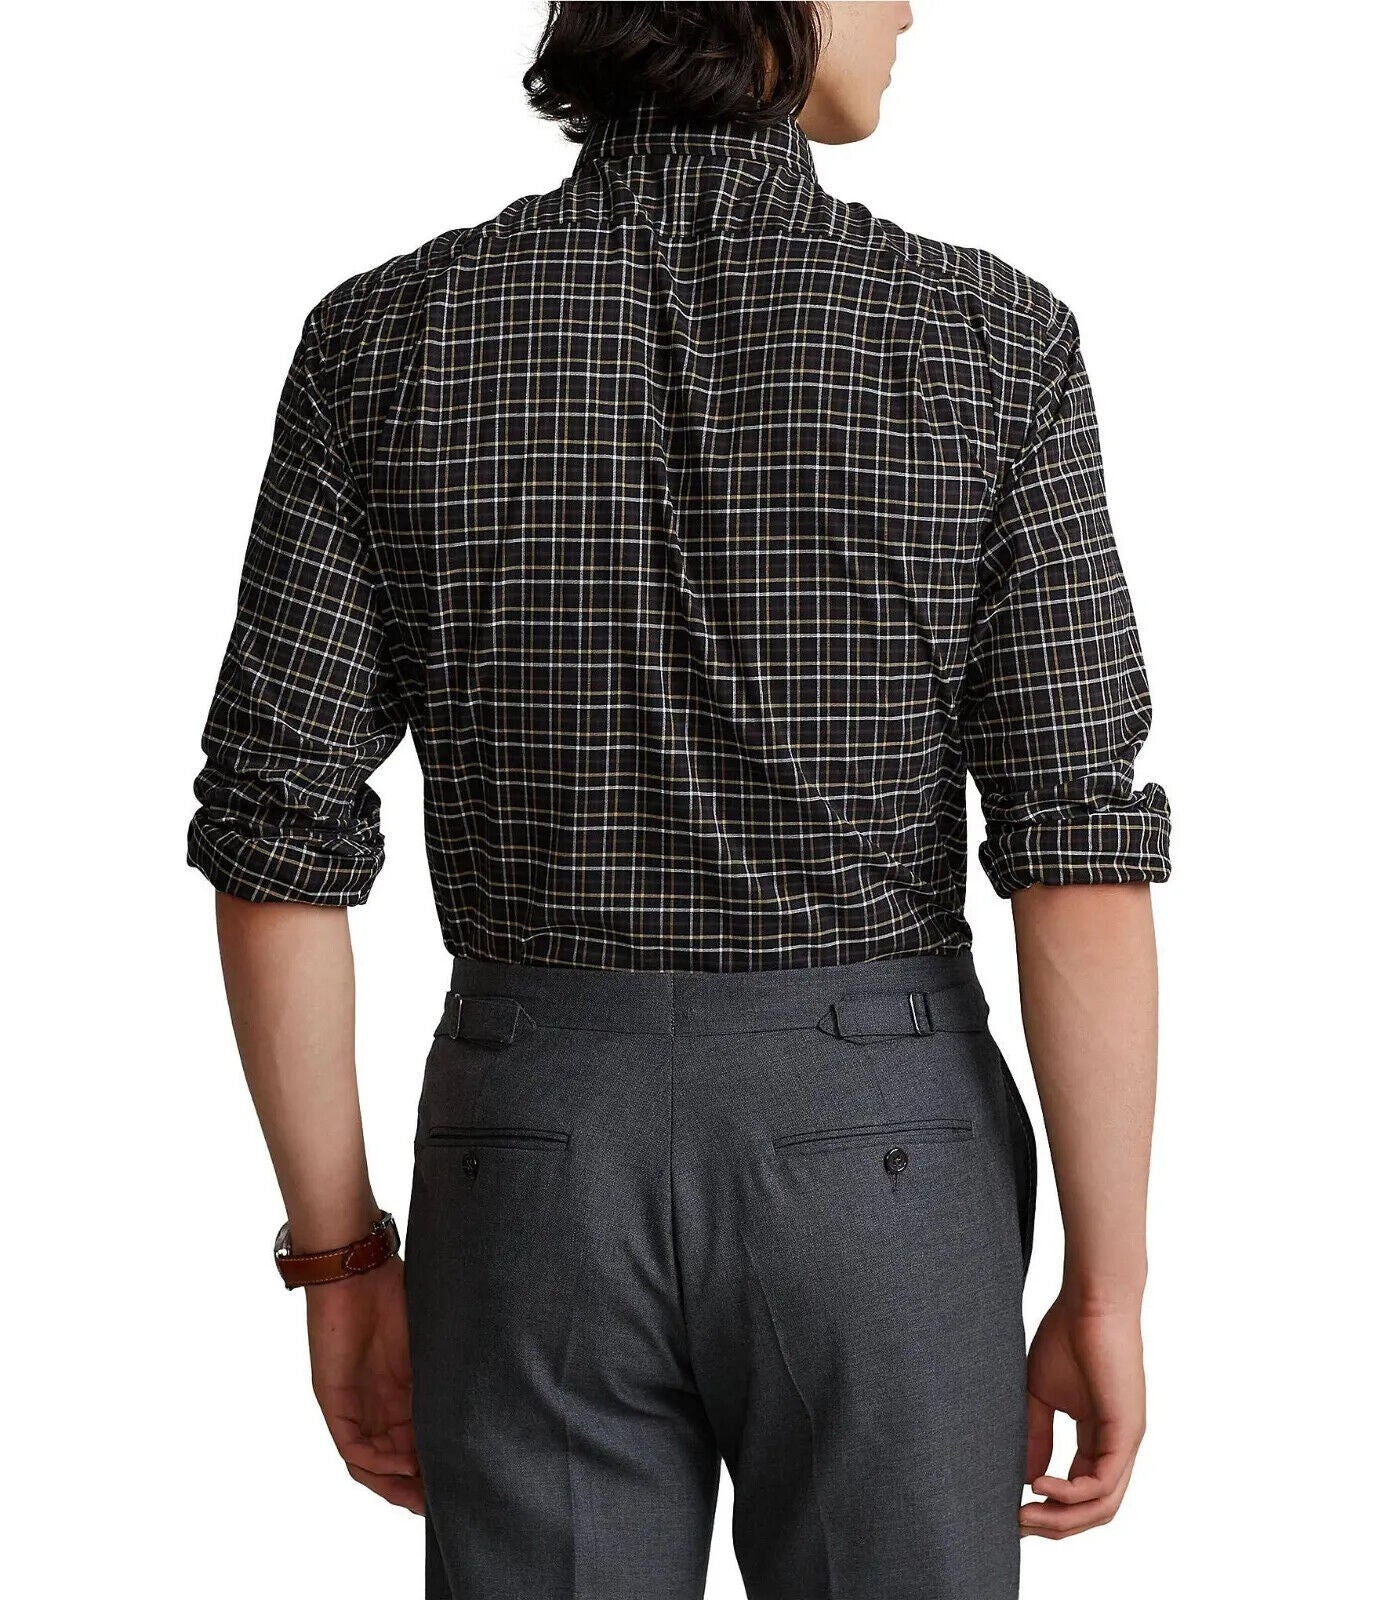 Polo Ralph Lauren Men's Classic-Fit Twill Shirt  Color Black/Tan Size S